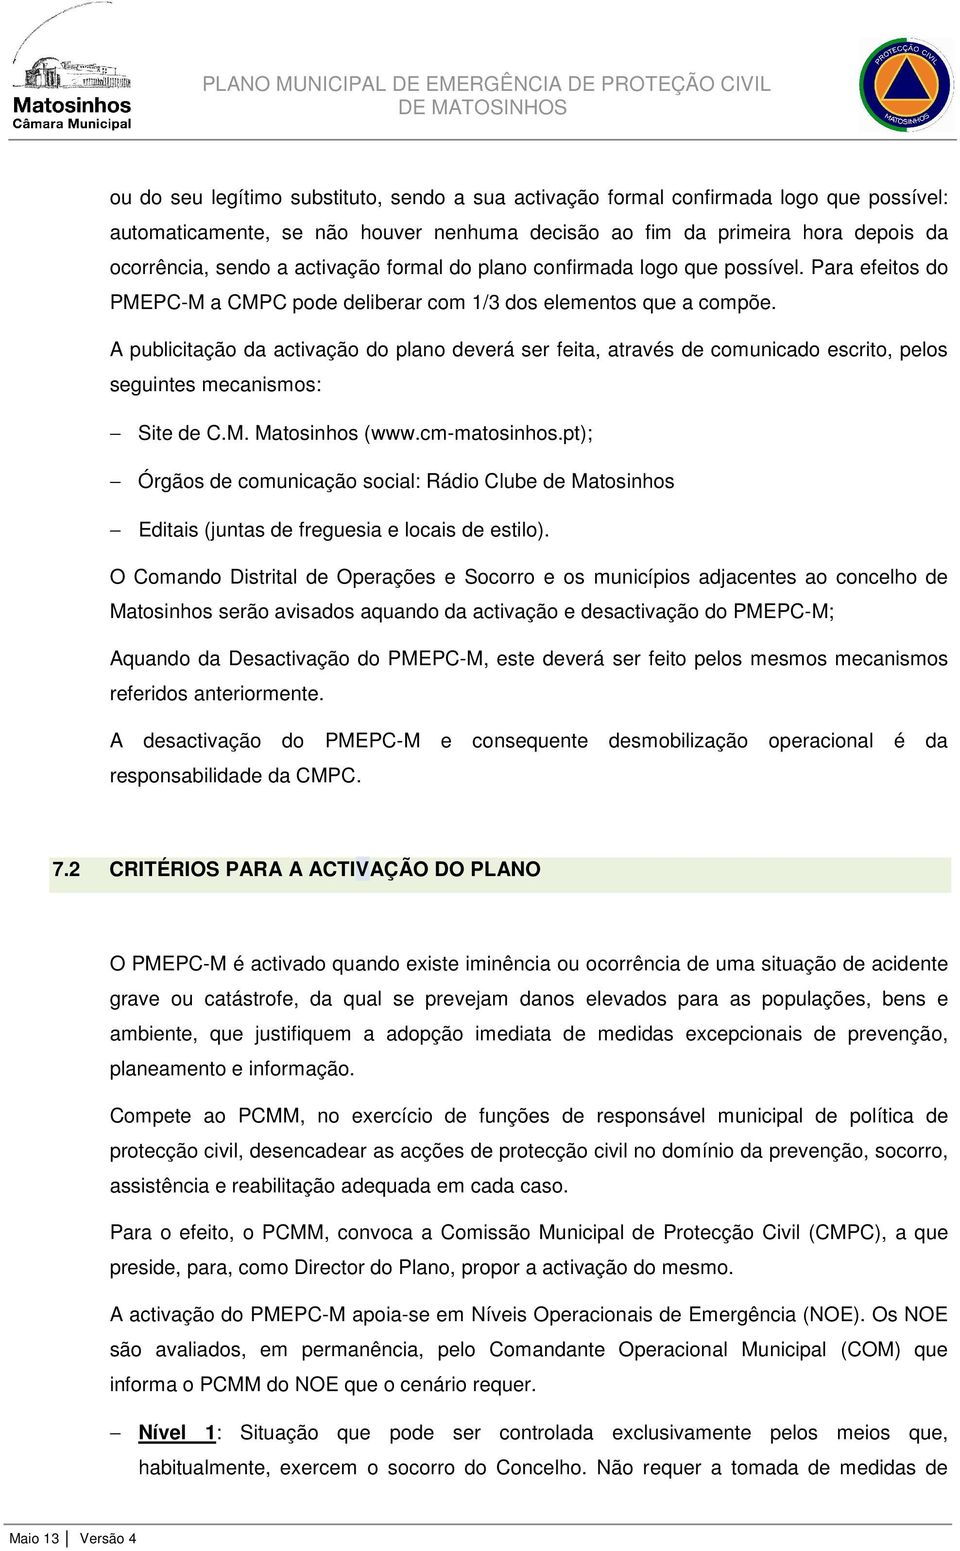 A publicitação da activação do plano deverá ser feita, através de comunicado escrito, pelos seguintes mecanismos: Site de C.M. Matosinhos (www.cm-matosinhos.